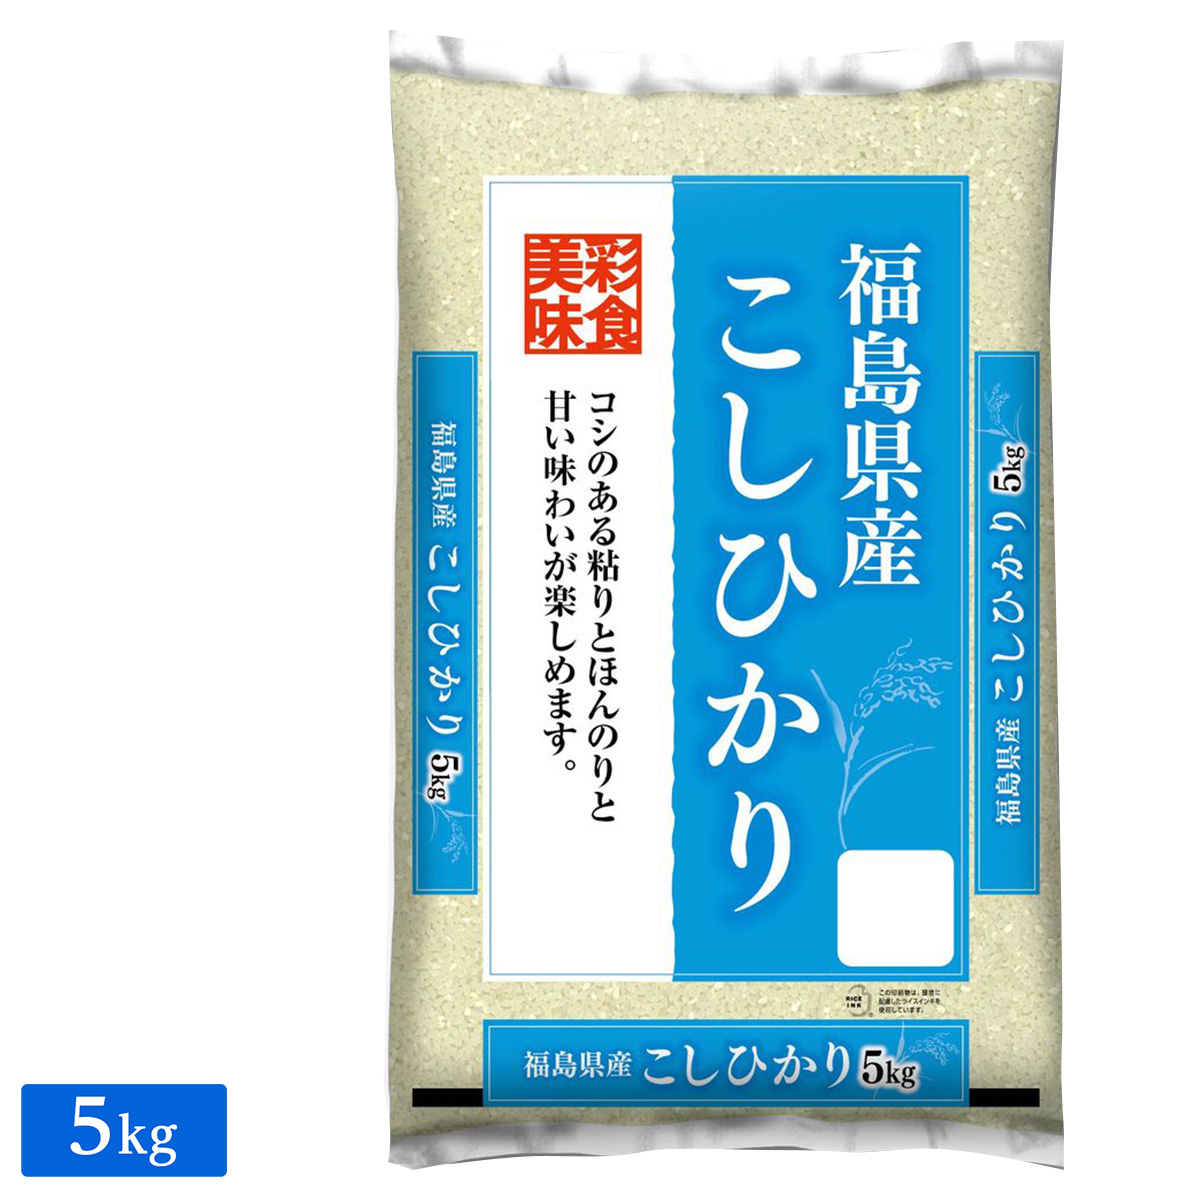 ○令和3年産 福島県産 コシヒカリ 5kg(5kg×1袋)